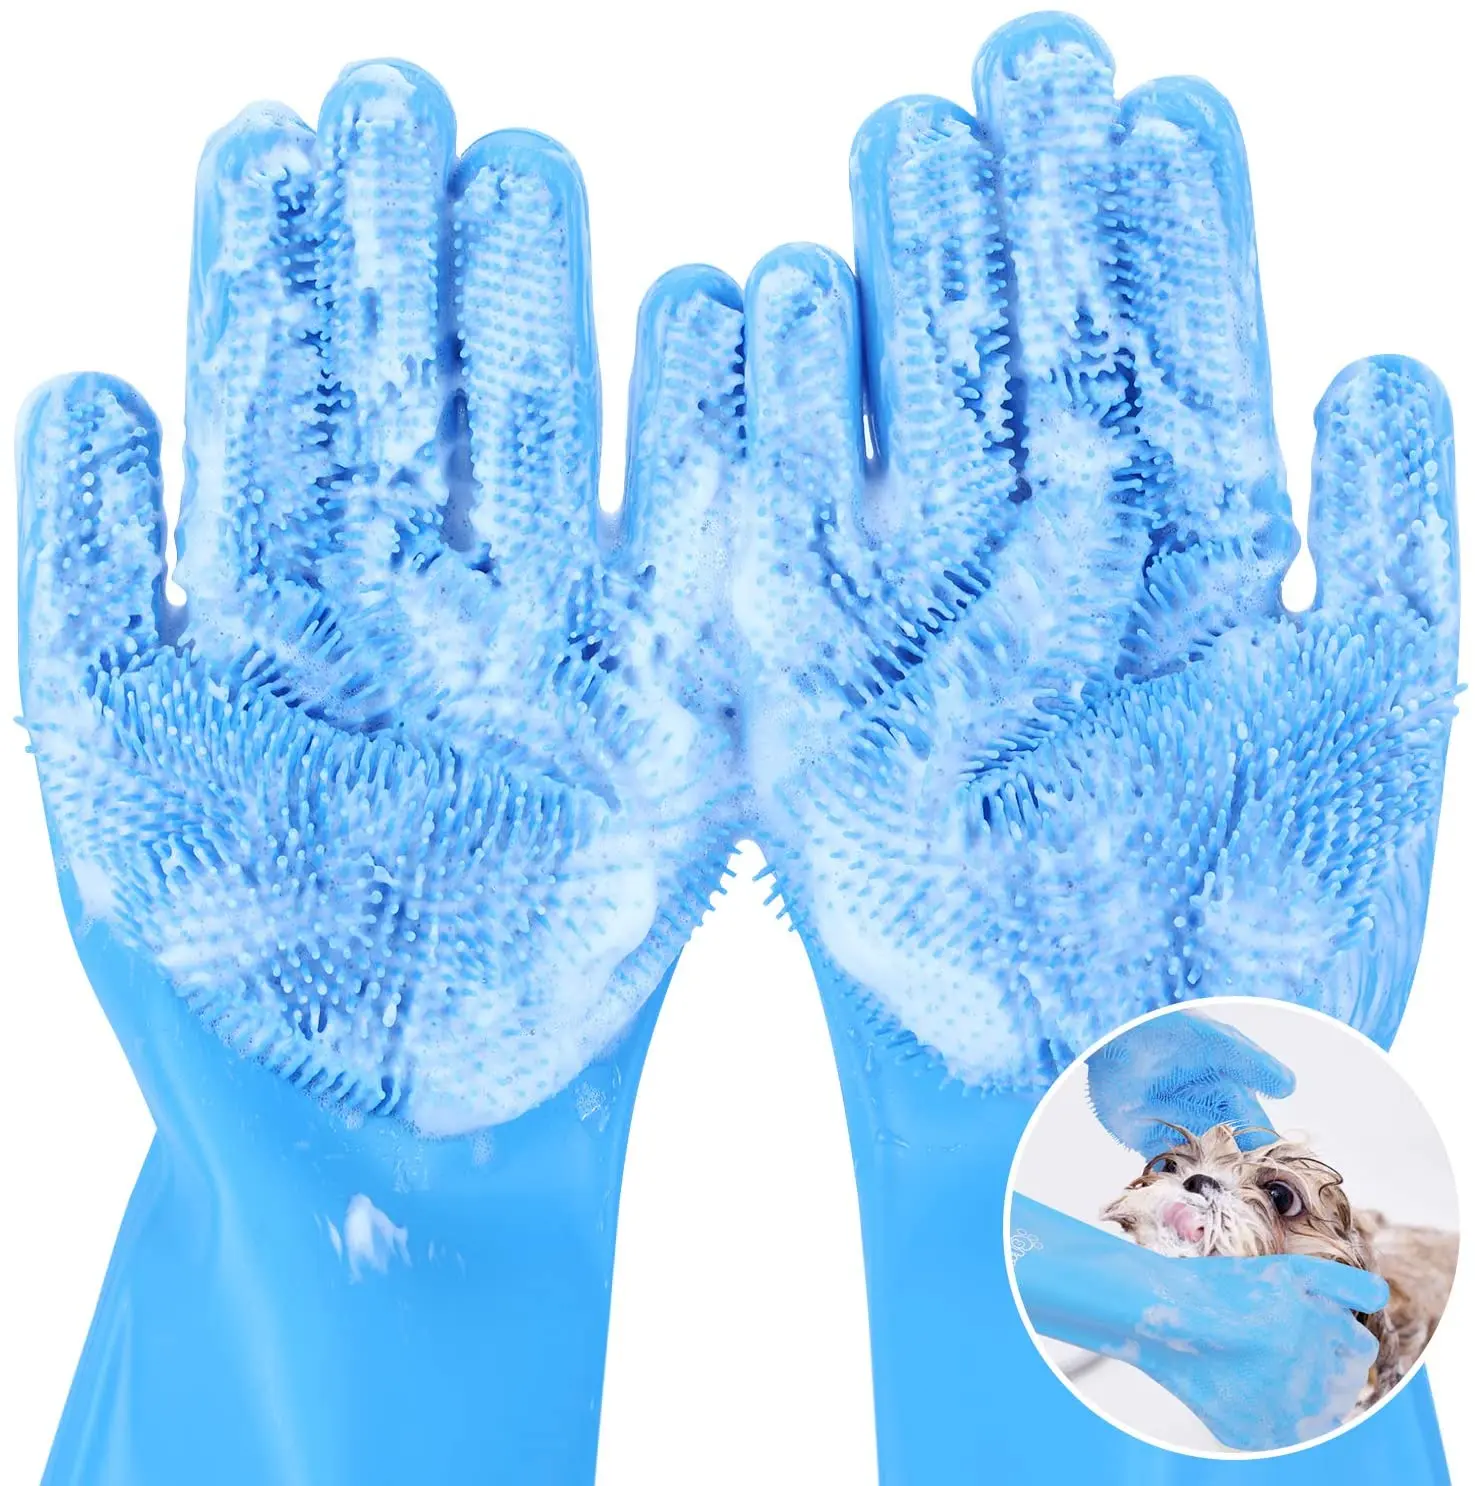 

Силиконовые многоразовые термостойкие перчатки для чистки подходят для всех работ по уборке дома, купания и массажа домашних животных